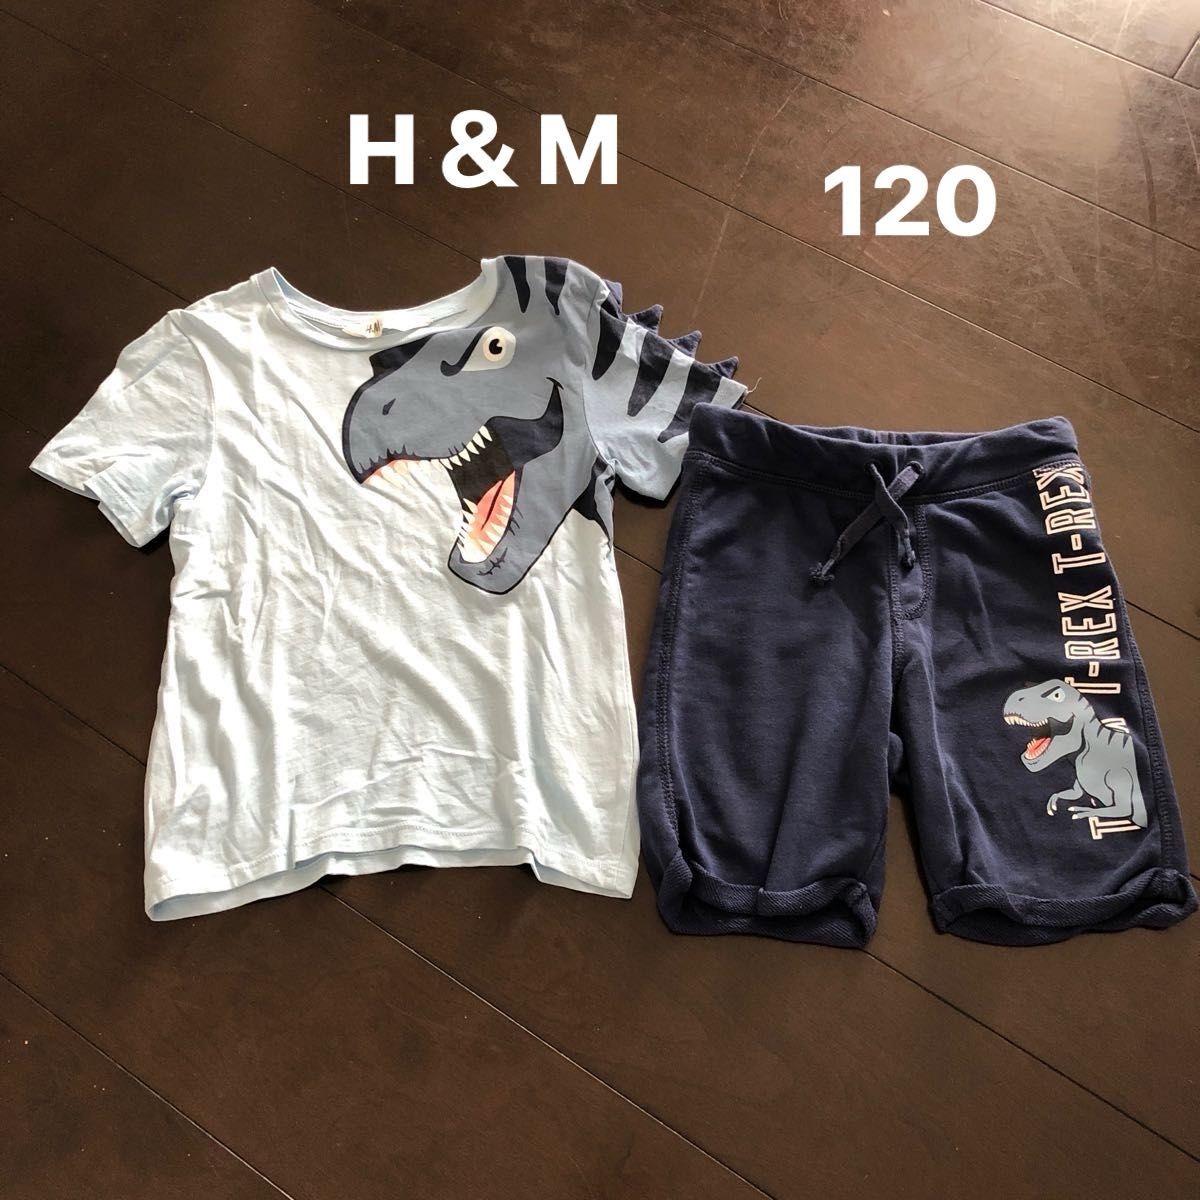 子供服 キッズ服 120 恐竜 H&M 上下セット 半袖Tシャツ ハーフパンツ